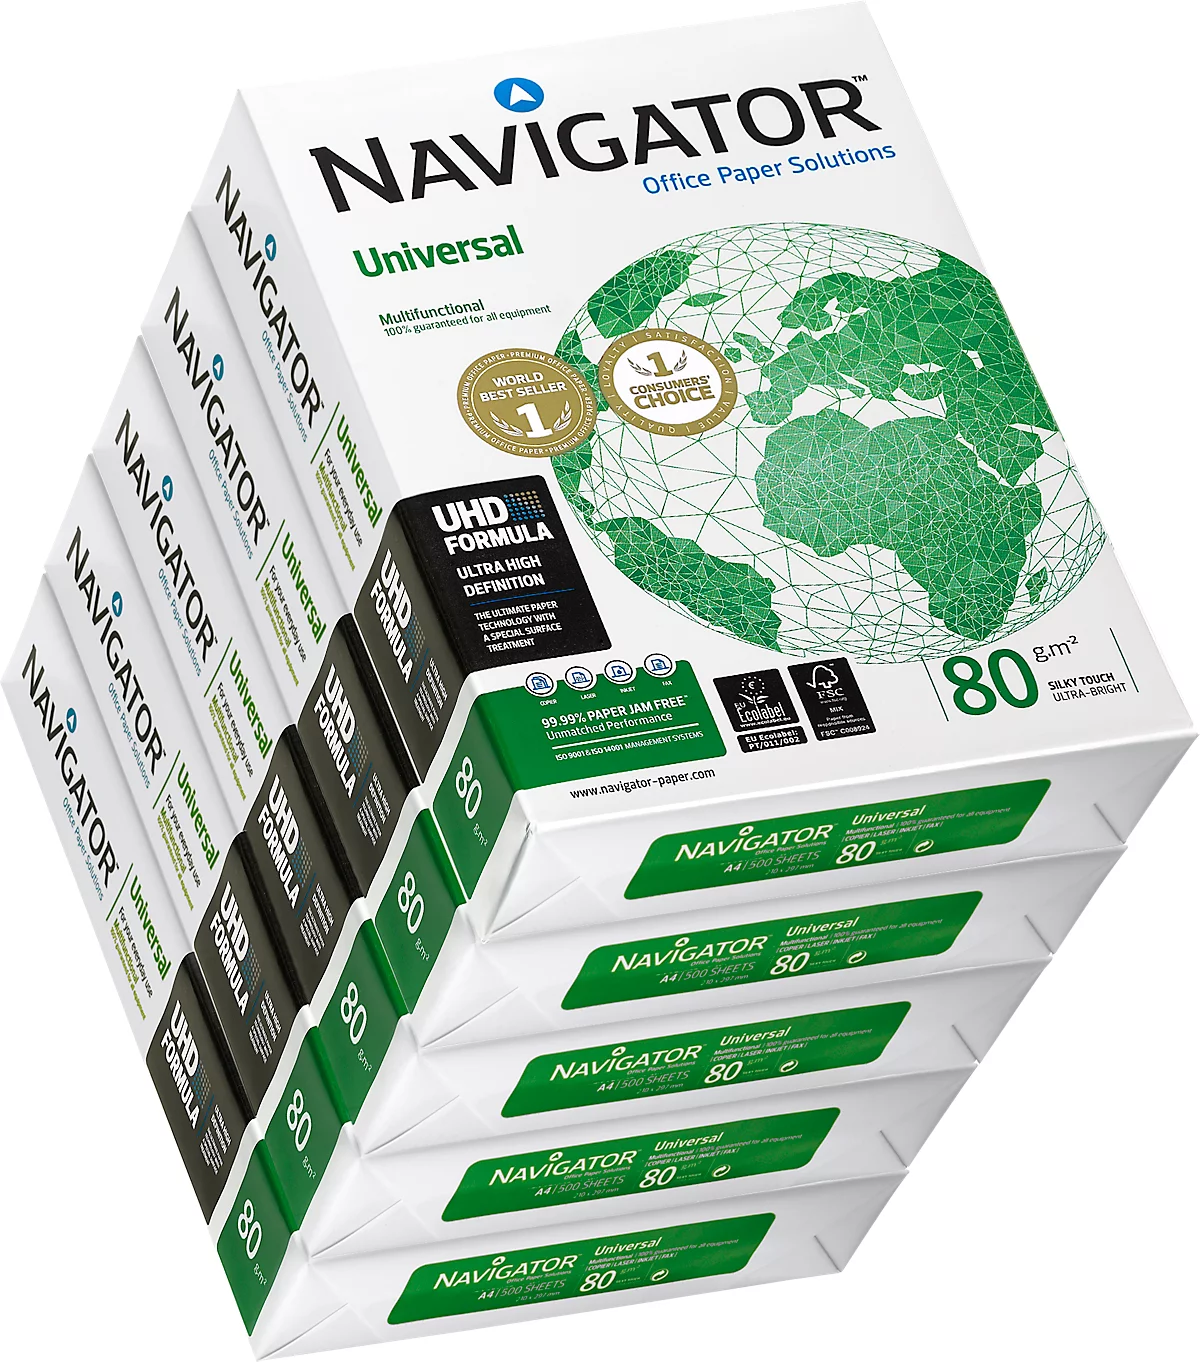 Papel de copia Navigator Universal, DIN A4, 80 g/m², blanco brillante, 1 caja = 5 x 500 hojas